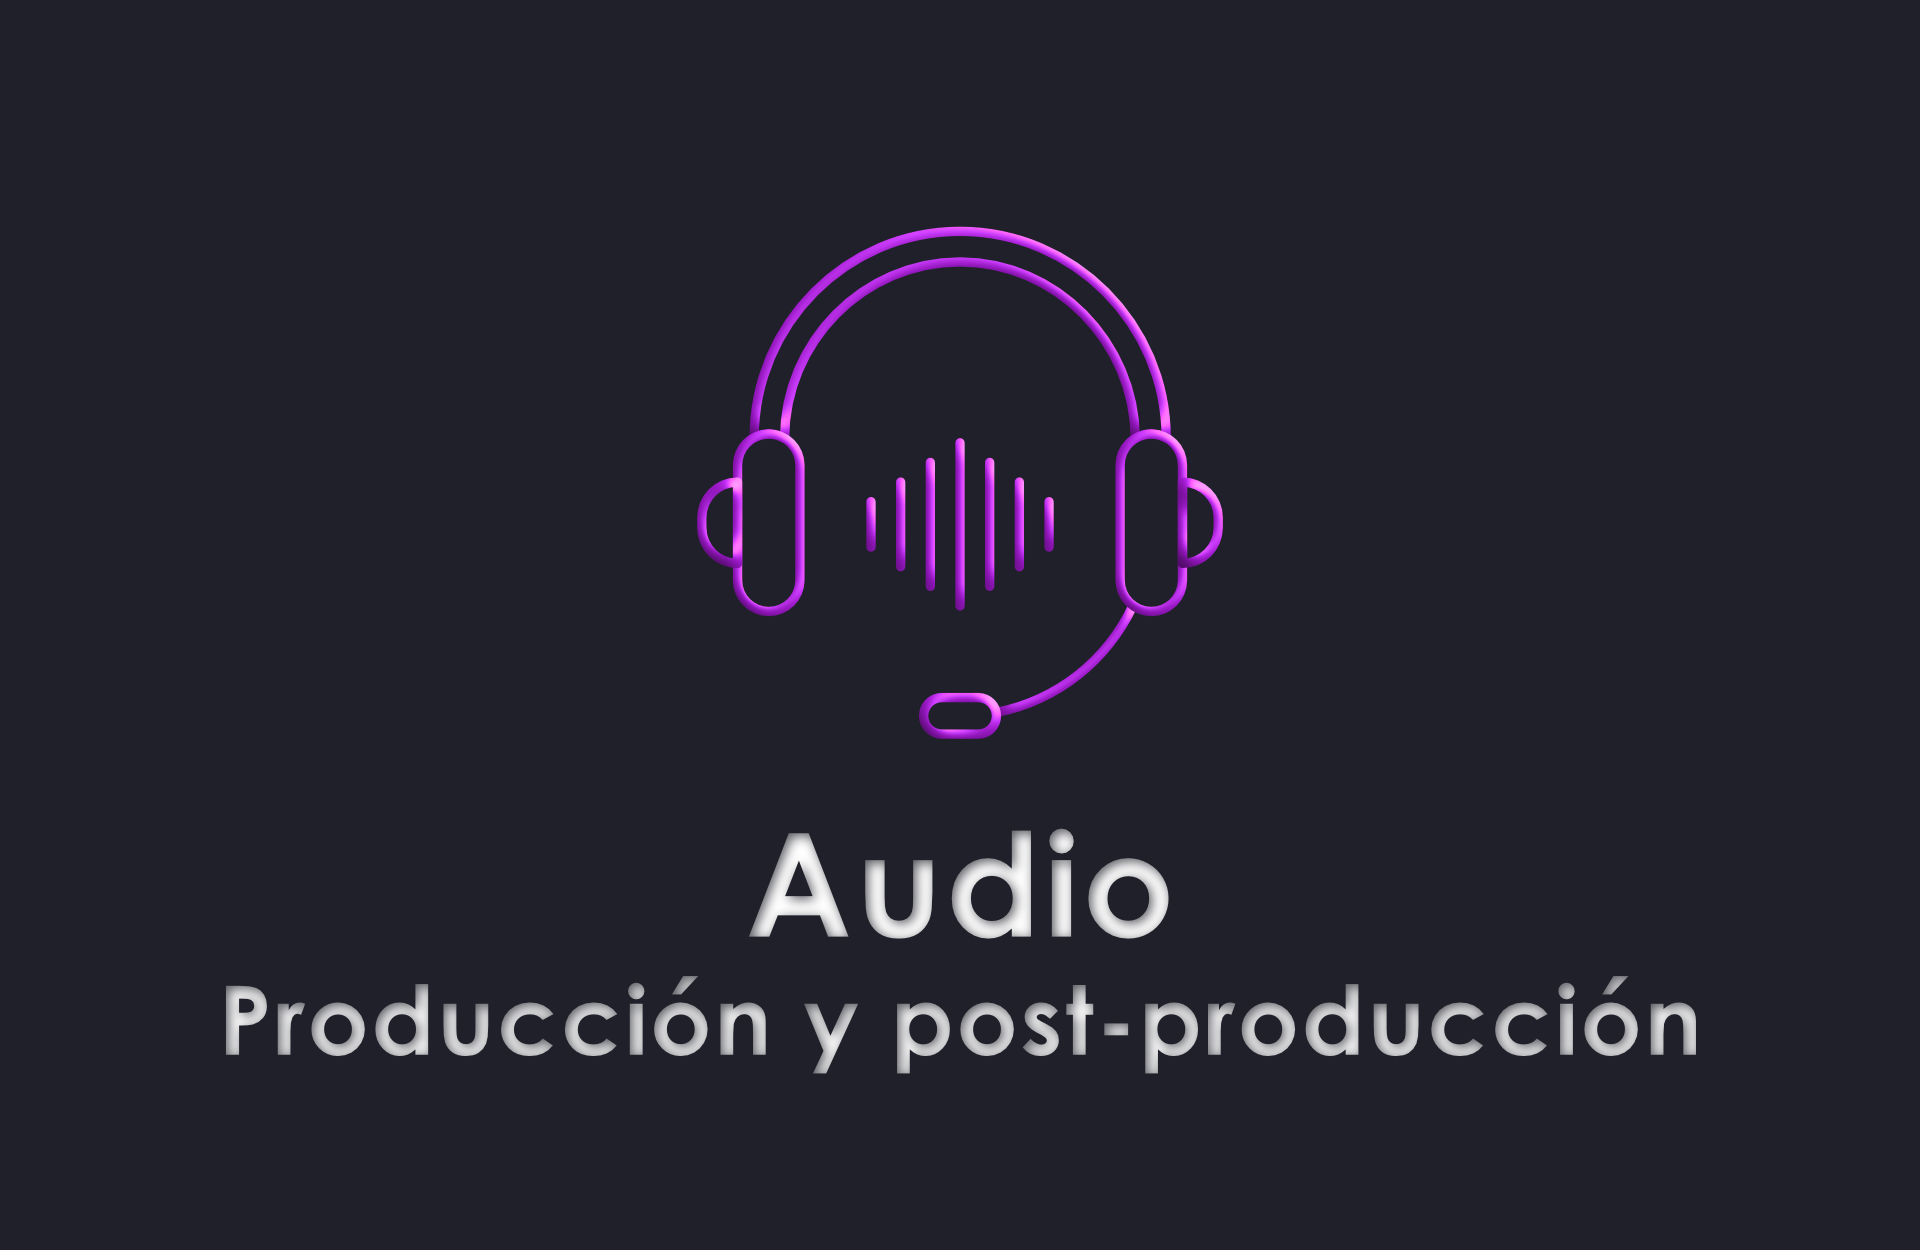 Audios (Producción y post-producción)